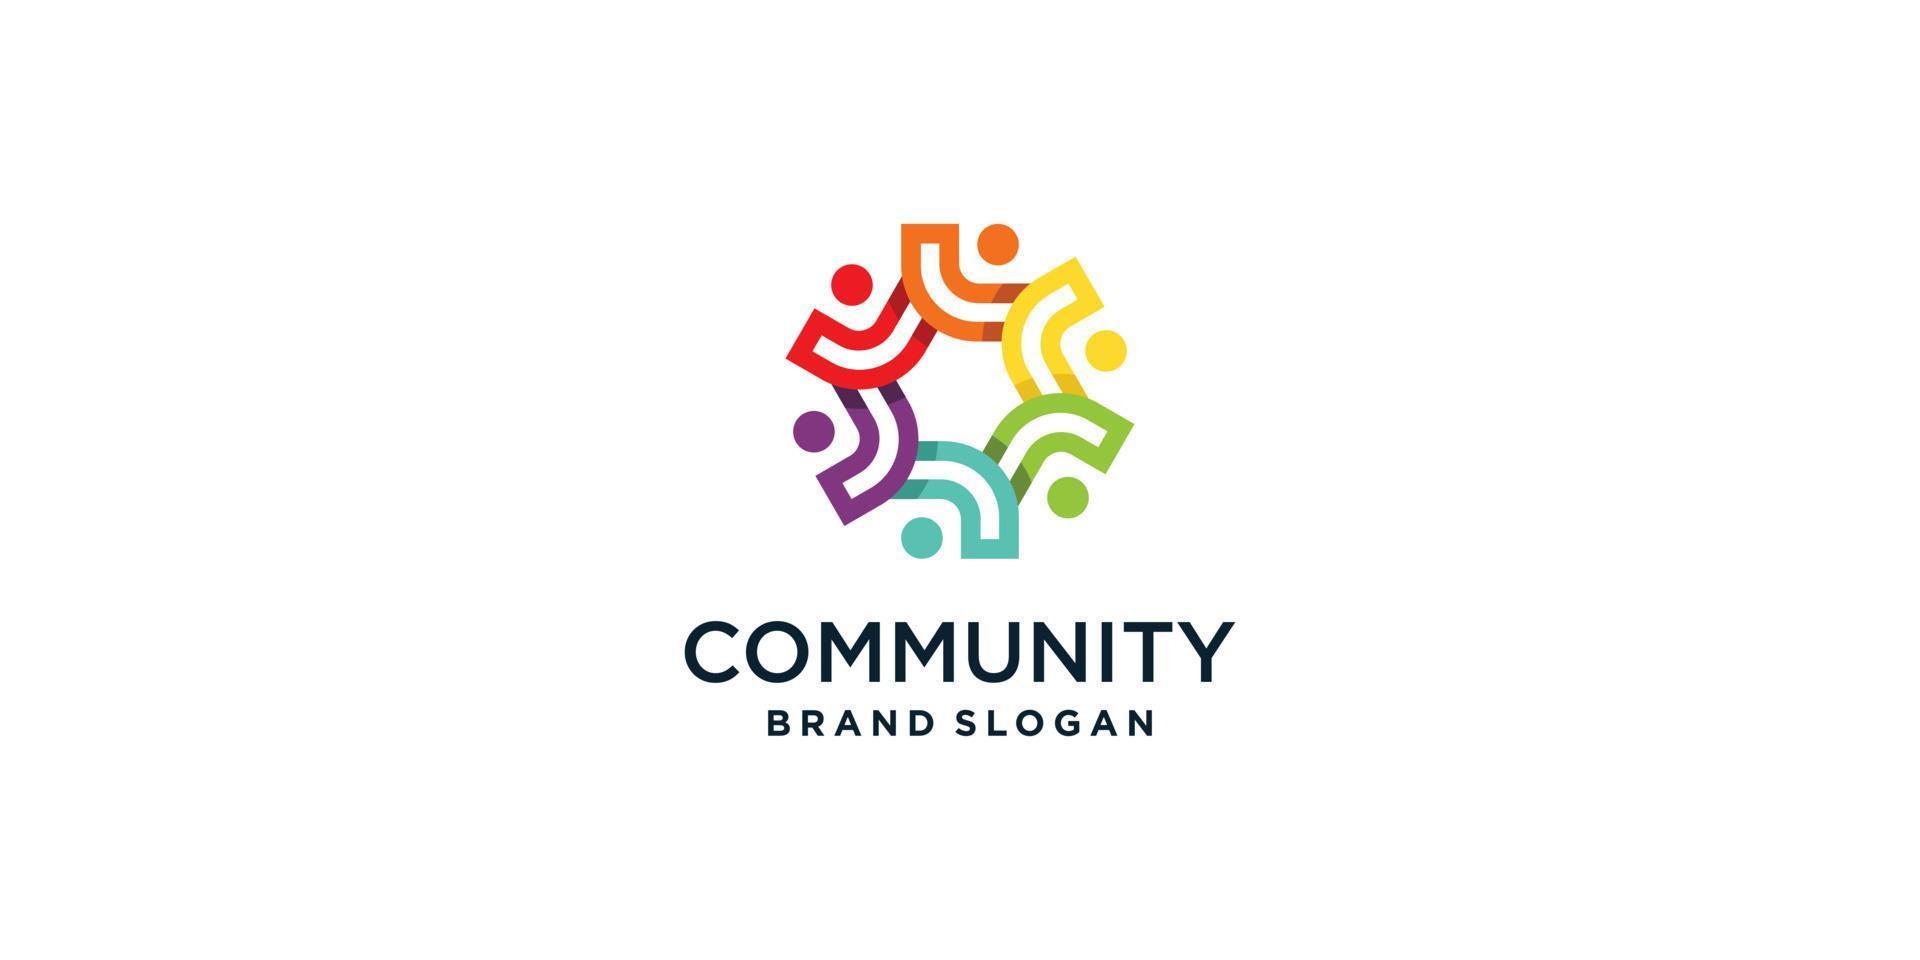 communauté et travail d'équipe logo abstrait vecteur premium partie 1